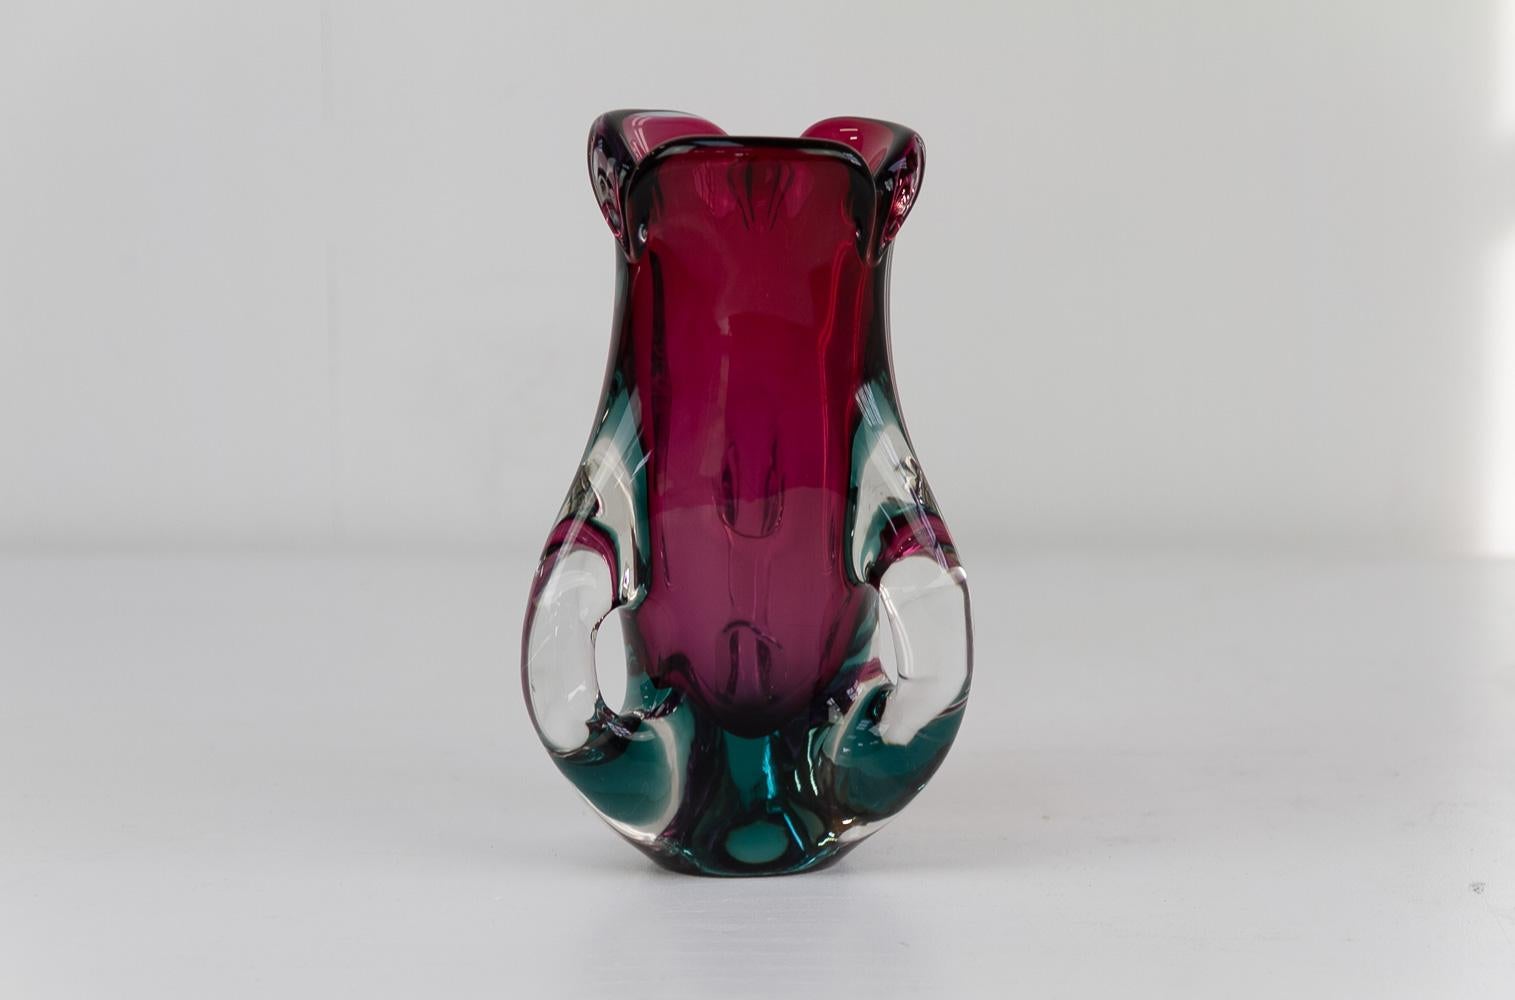 Italienische Vase aus lila und grünem Murano-Glas aus der Mitte des Jahrhunderts, 1960er Jahre.
Diese Vase ist aus Sommerso Murano-Glas und wurde in den 1960er Jahren in Italien aus klarem, grünem und violettem Glas mundgeblasen. 
Schöner